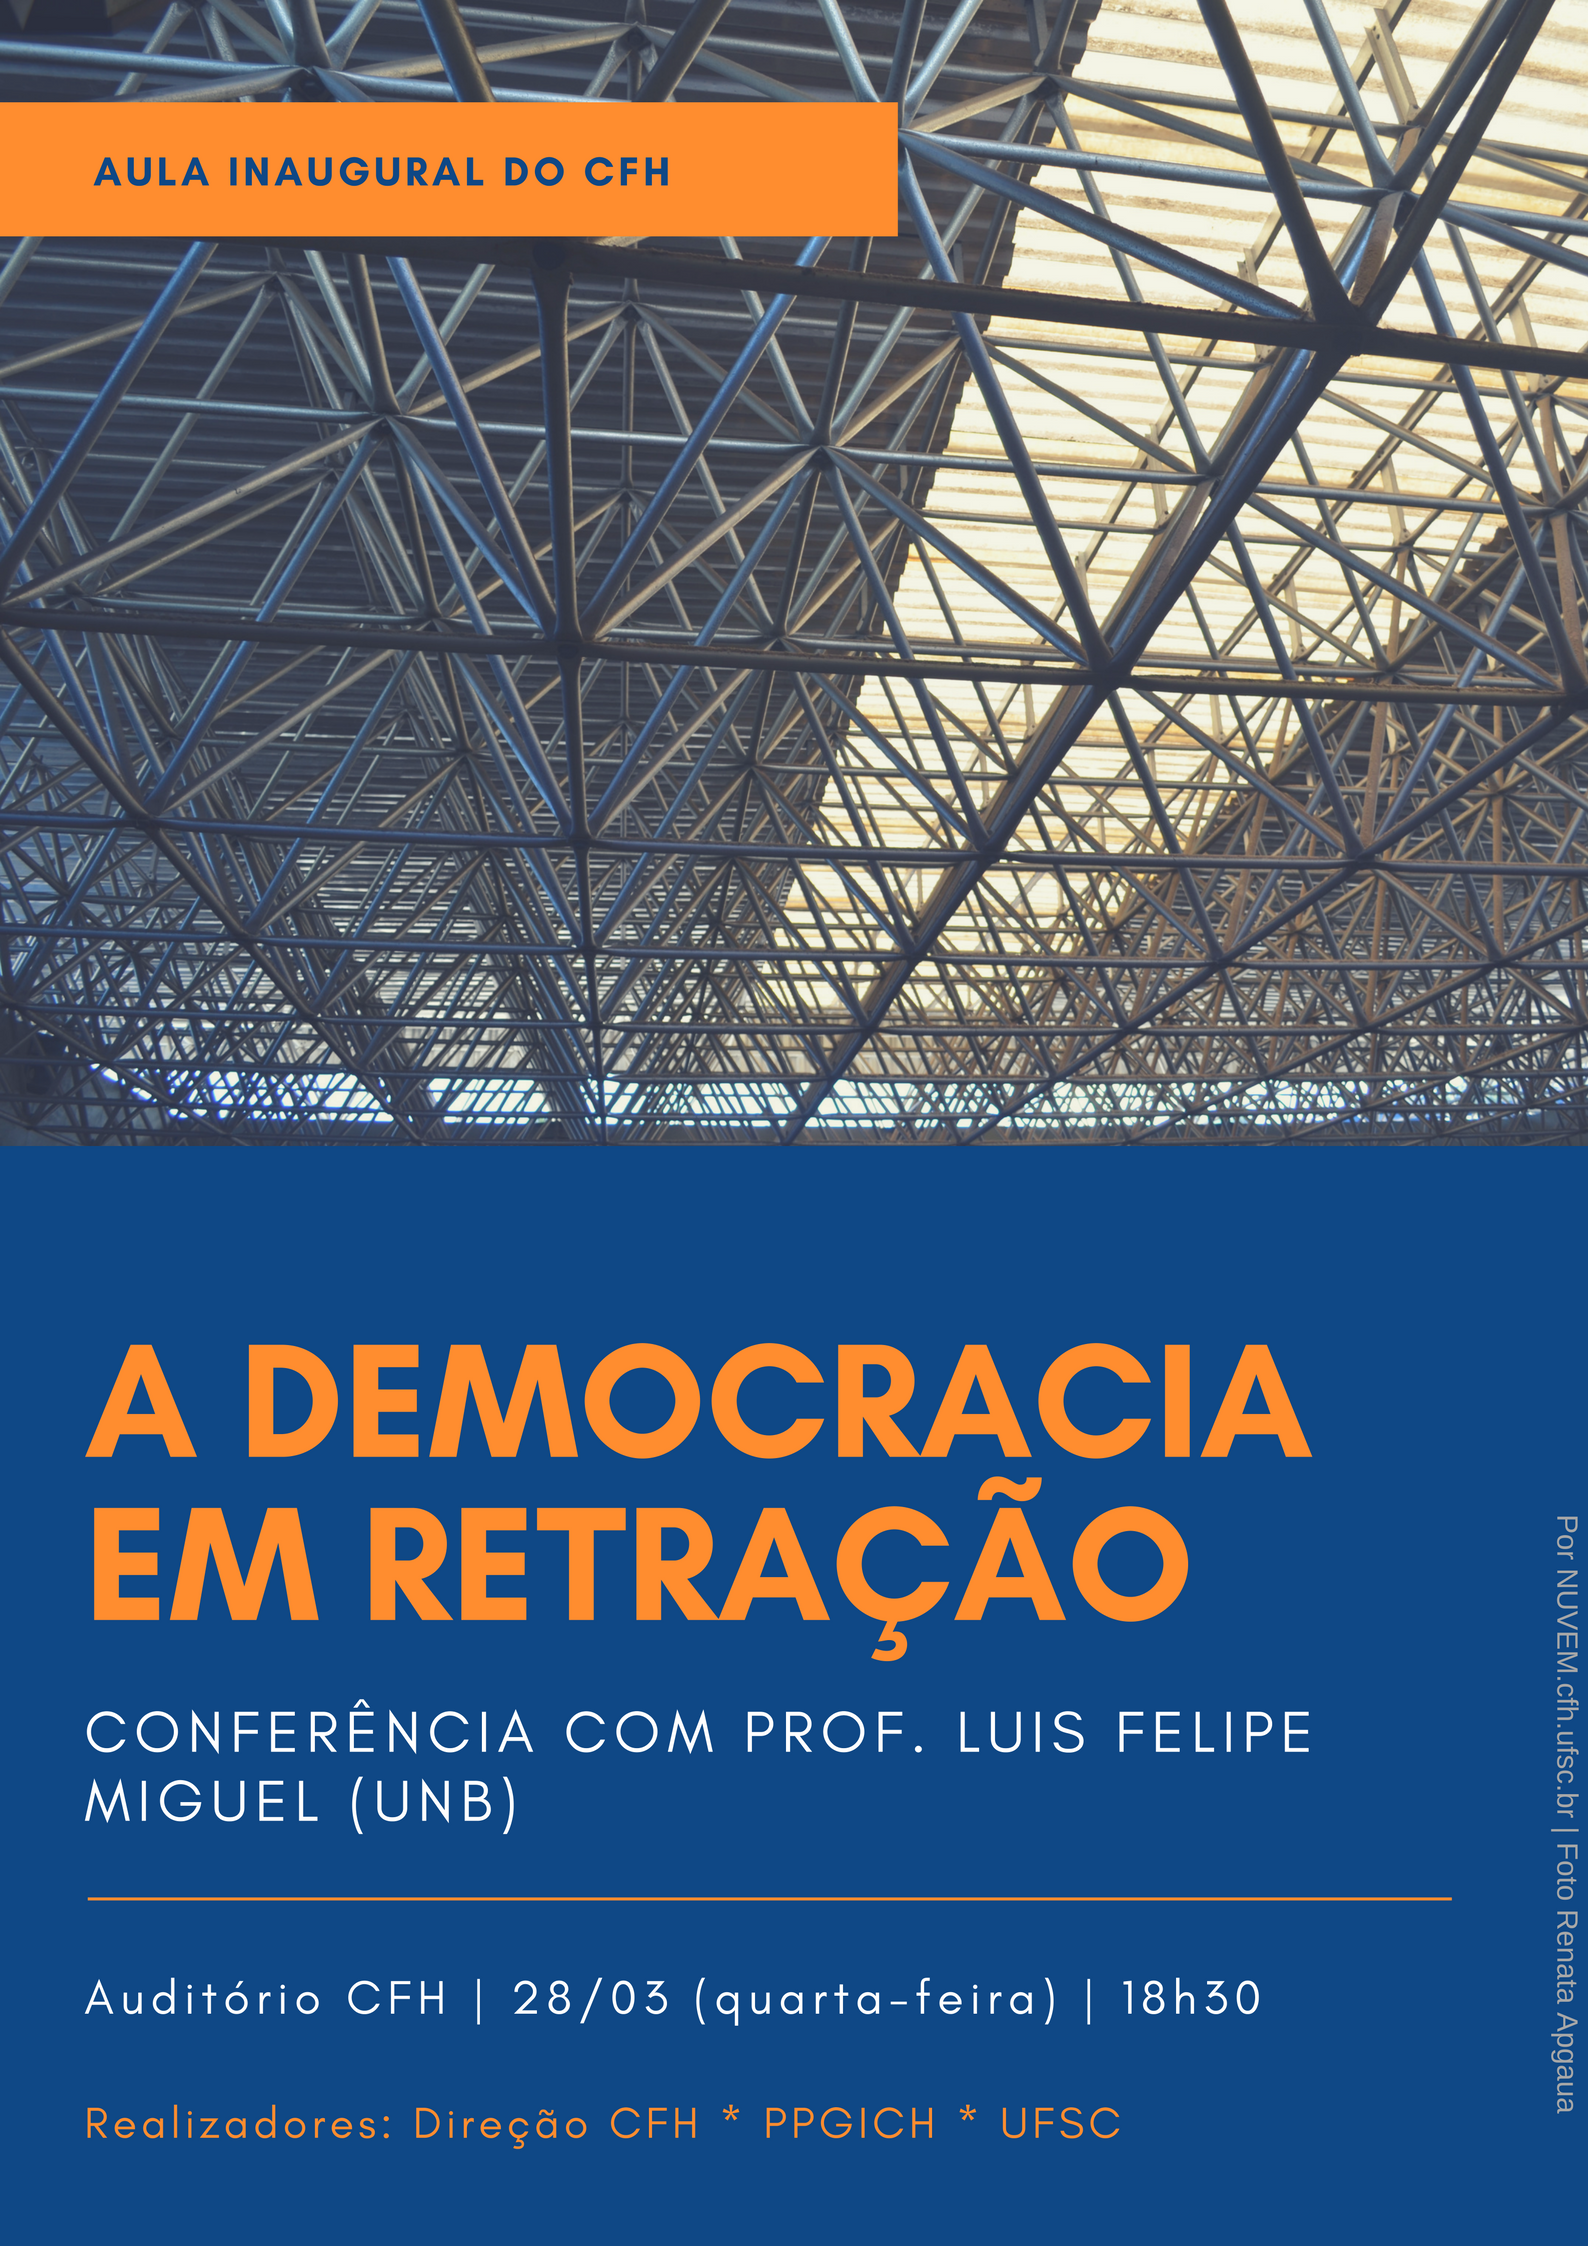 Aula inaugural do CFH: "A democracia em retração" c/ Luis Felipe Miguel